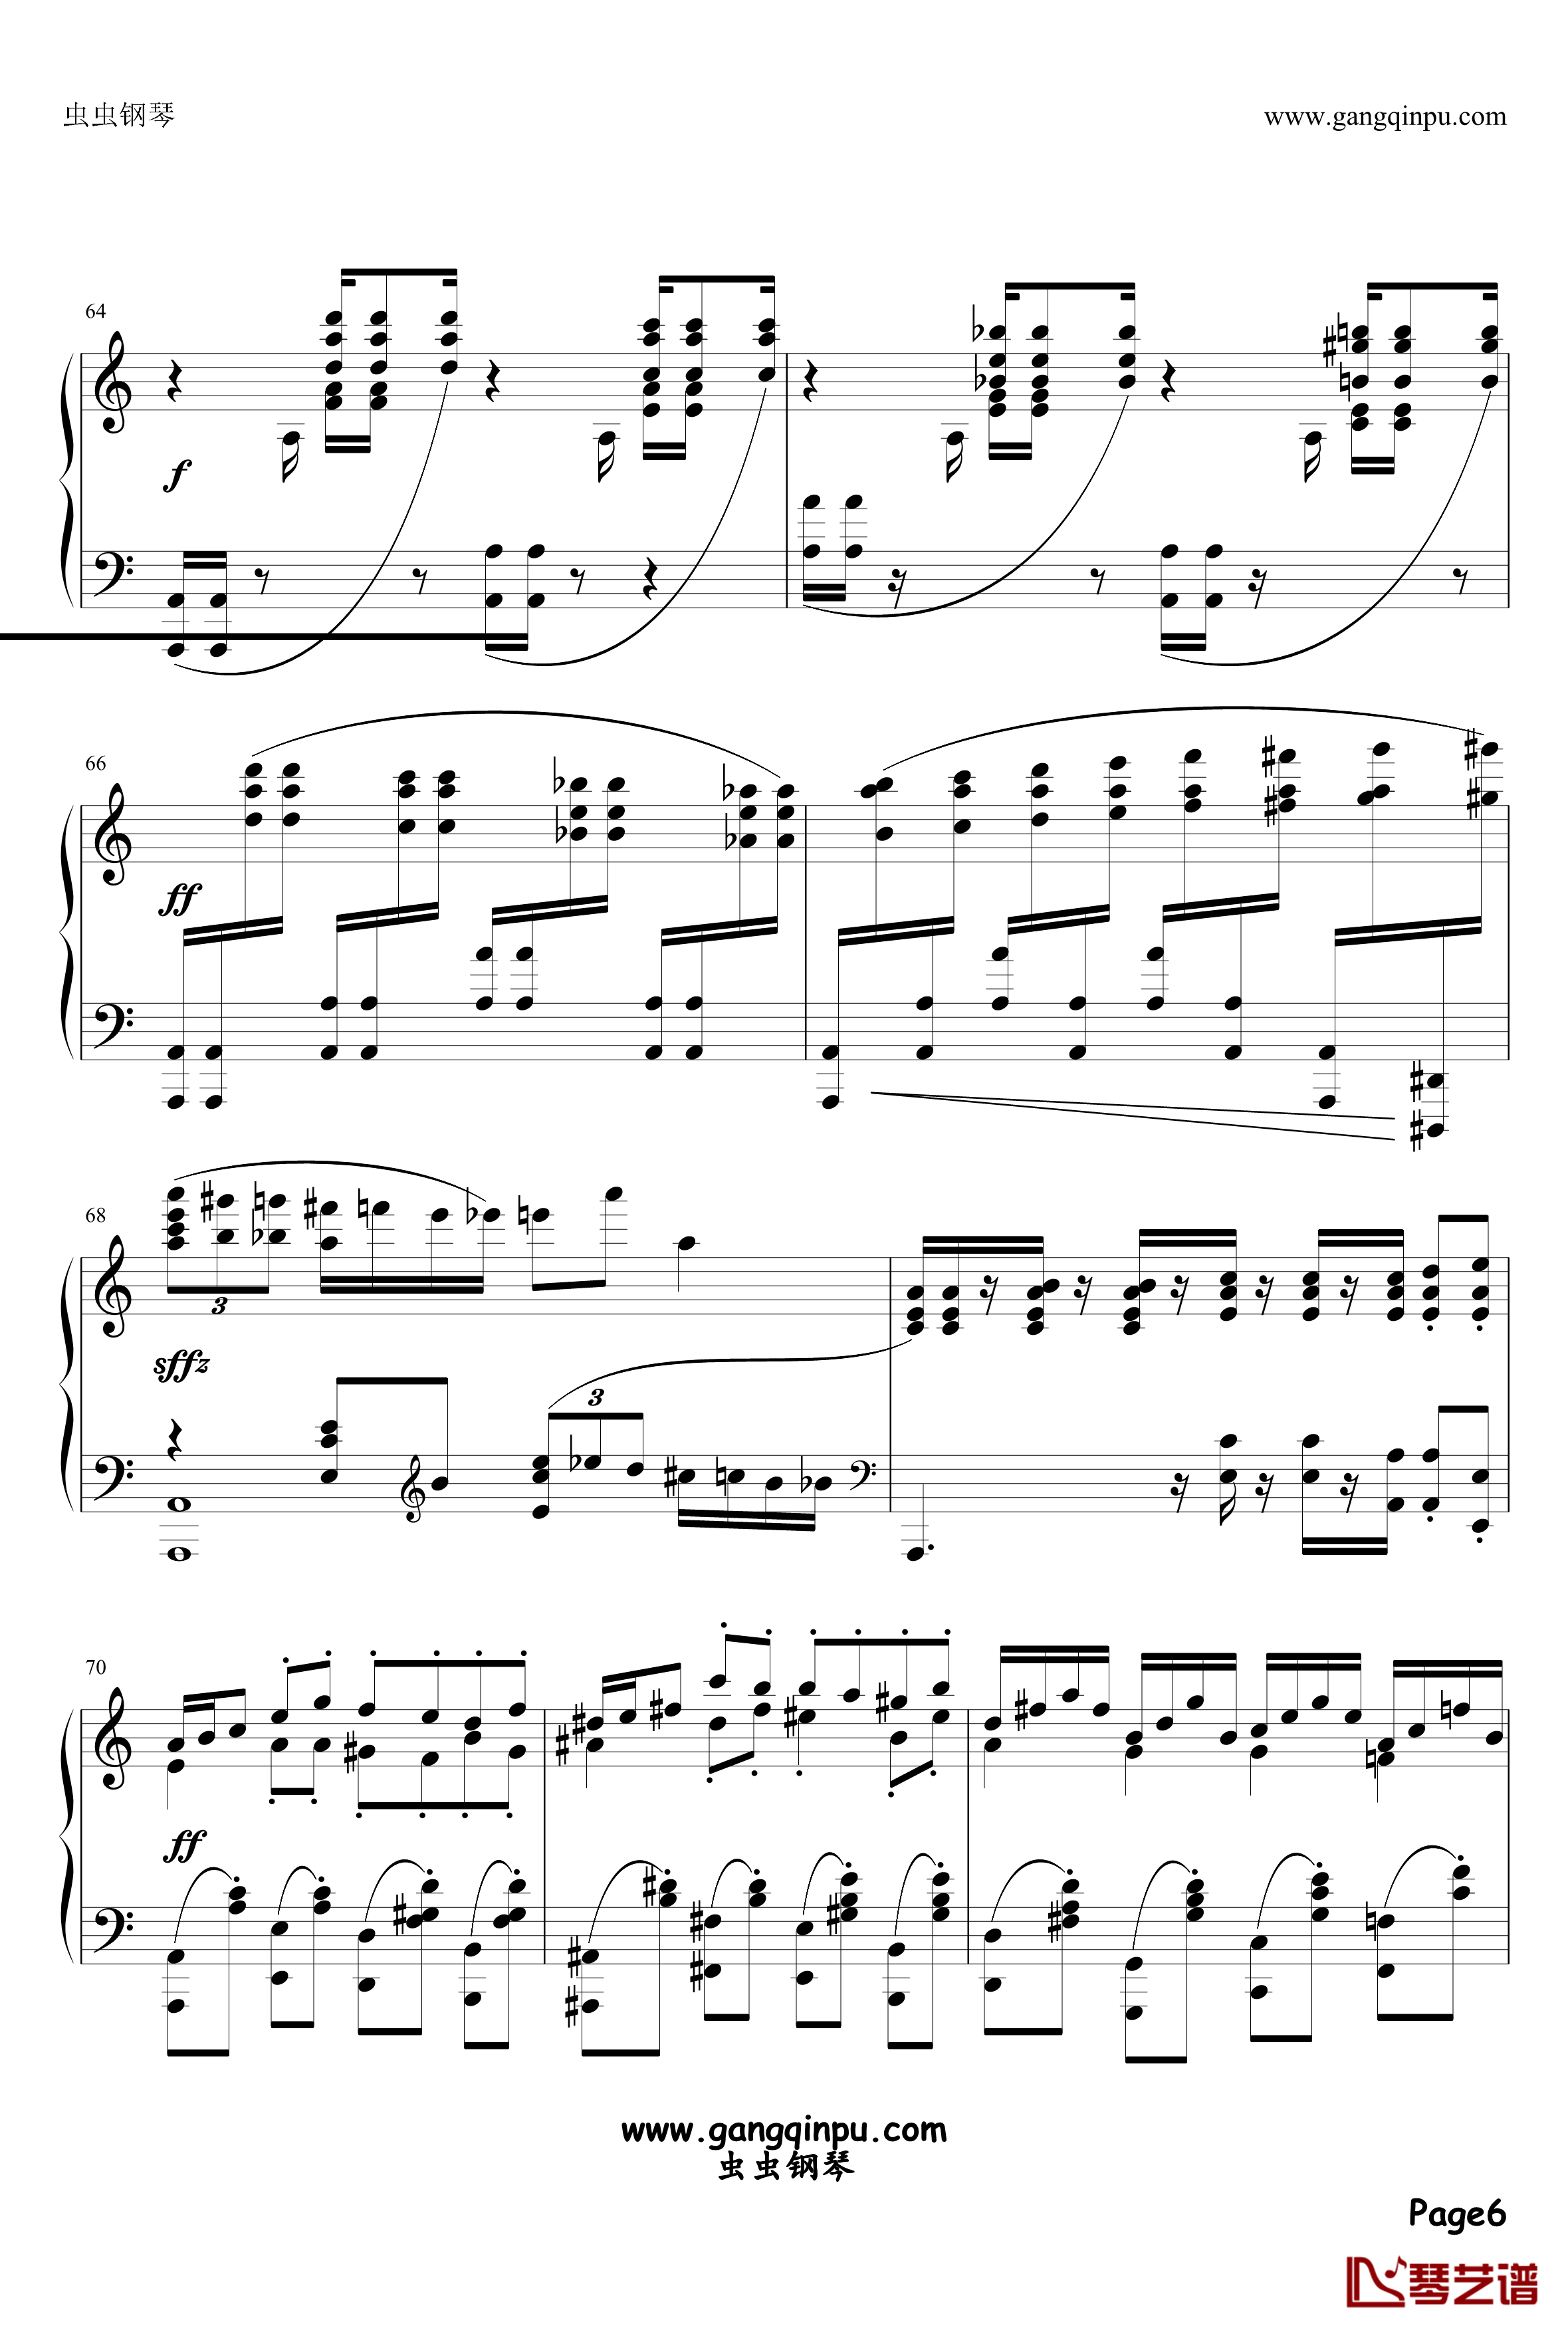 アストライアの双皿钢琴谱-ZODIACSYNDICATE6